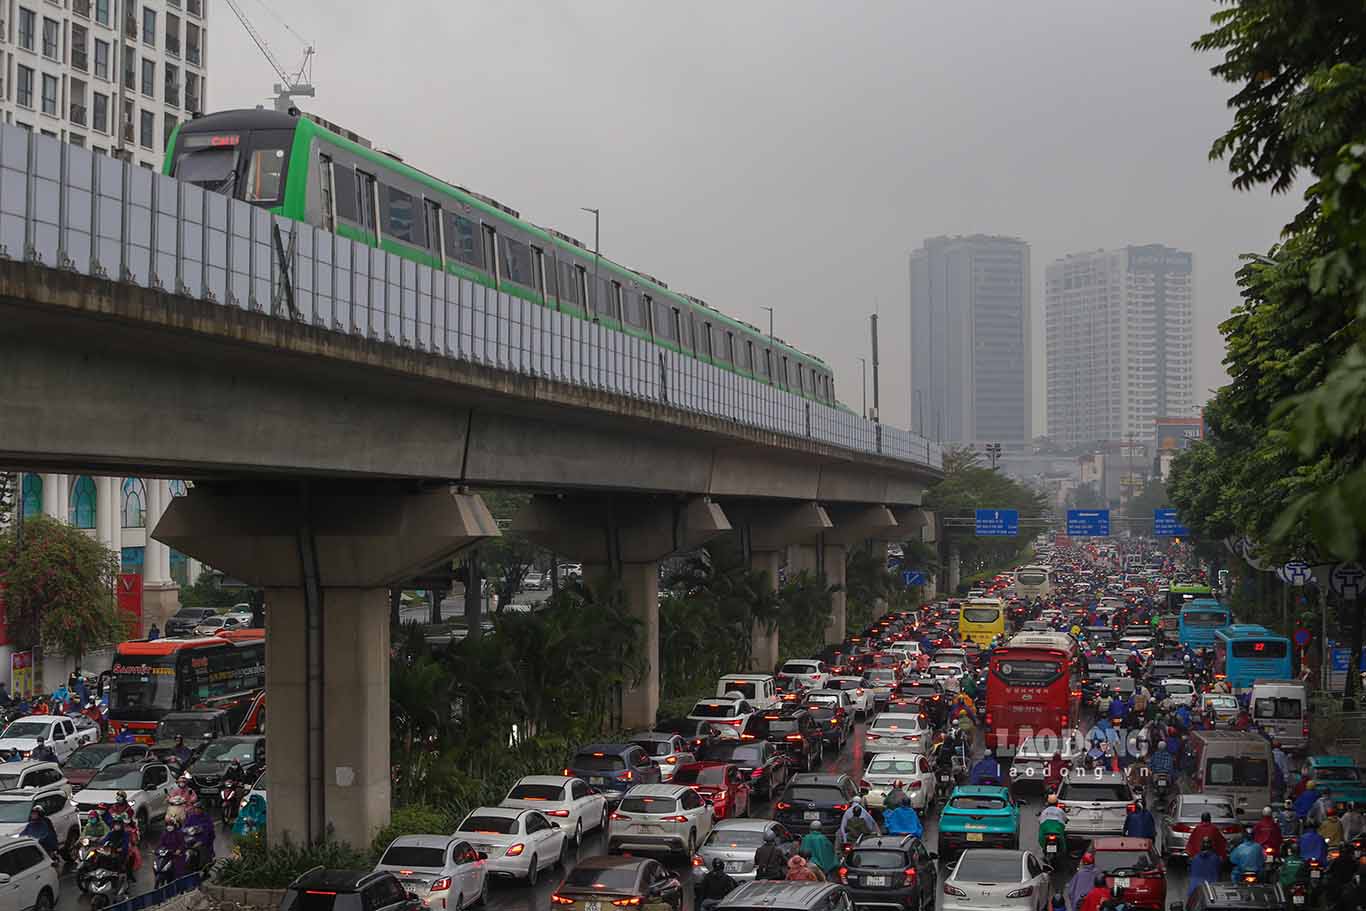 Dù tuyến đường sắt đô thị 2A Cát Linh - Hà Đông đã đi vào khai thác thương mại, nhưng lượng xe cá nhân vẫn còn rất lớn. Chính vì thế ùn tắc thường xuyên xảy ra trên trục đường này.